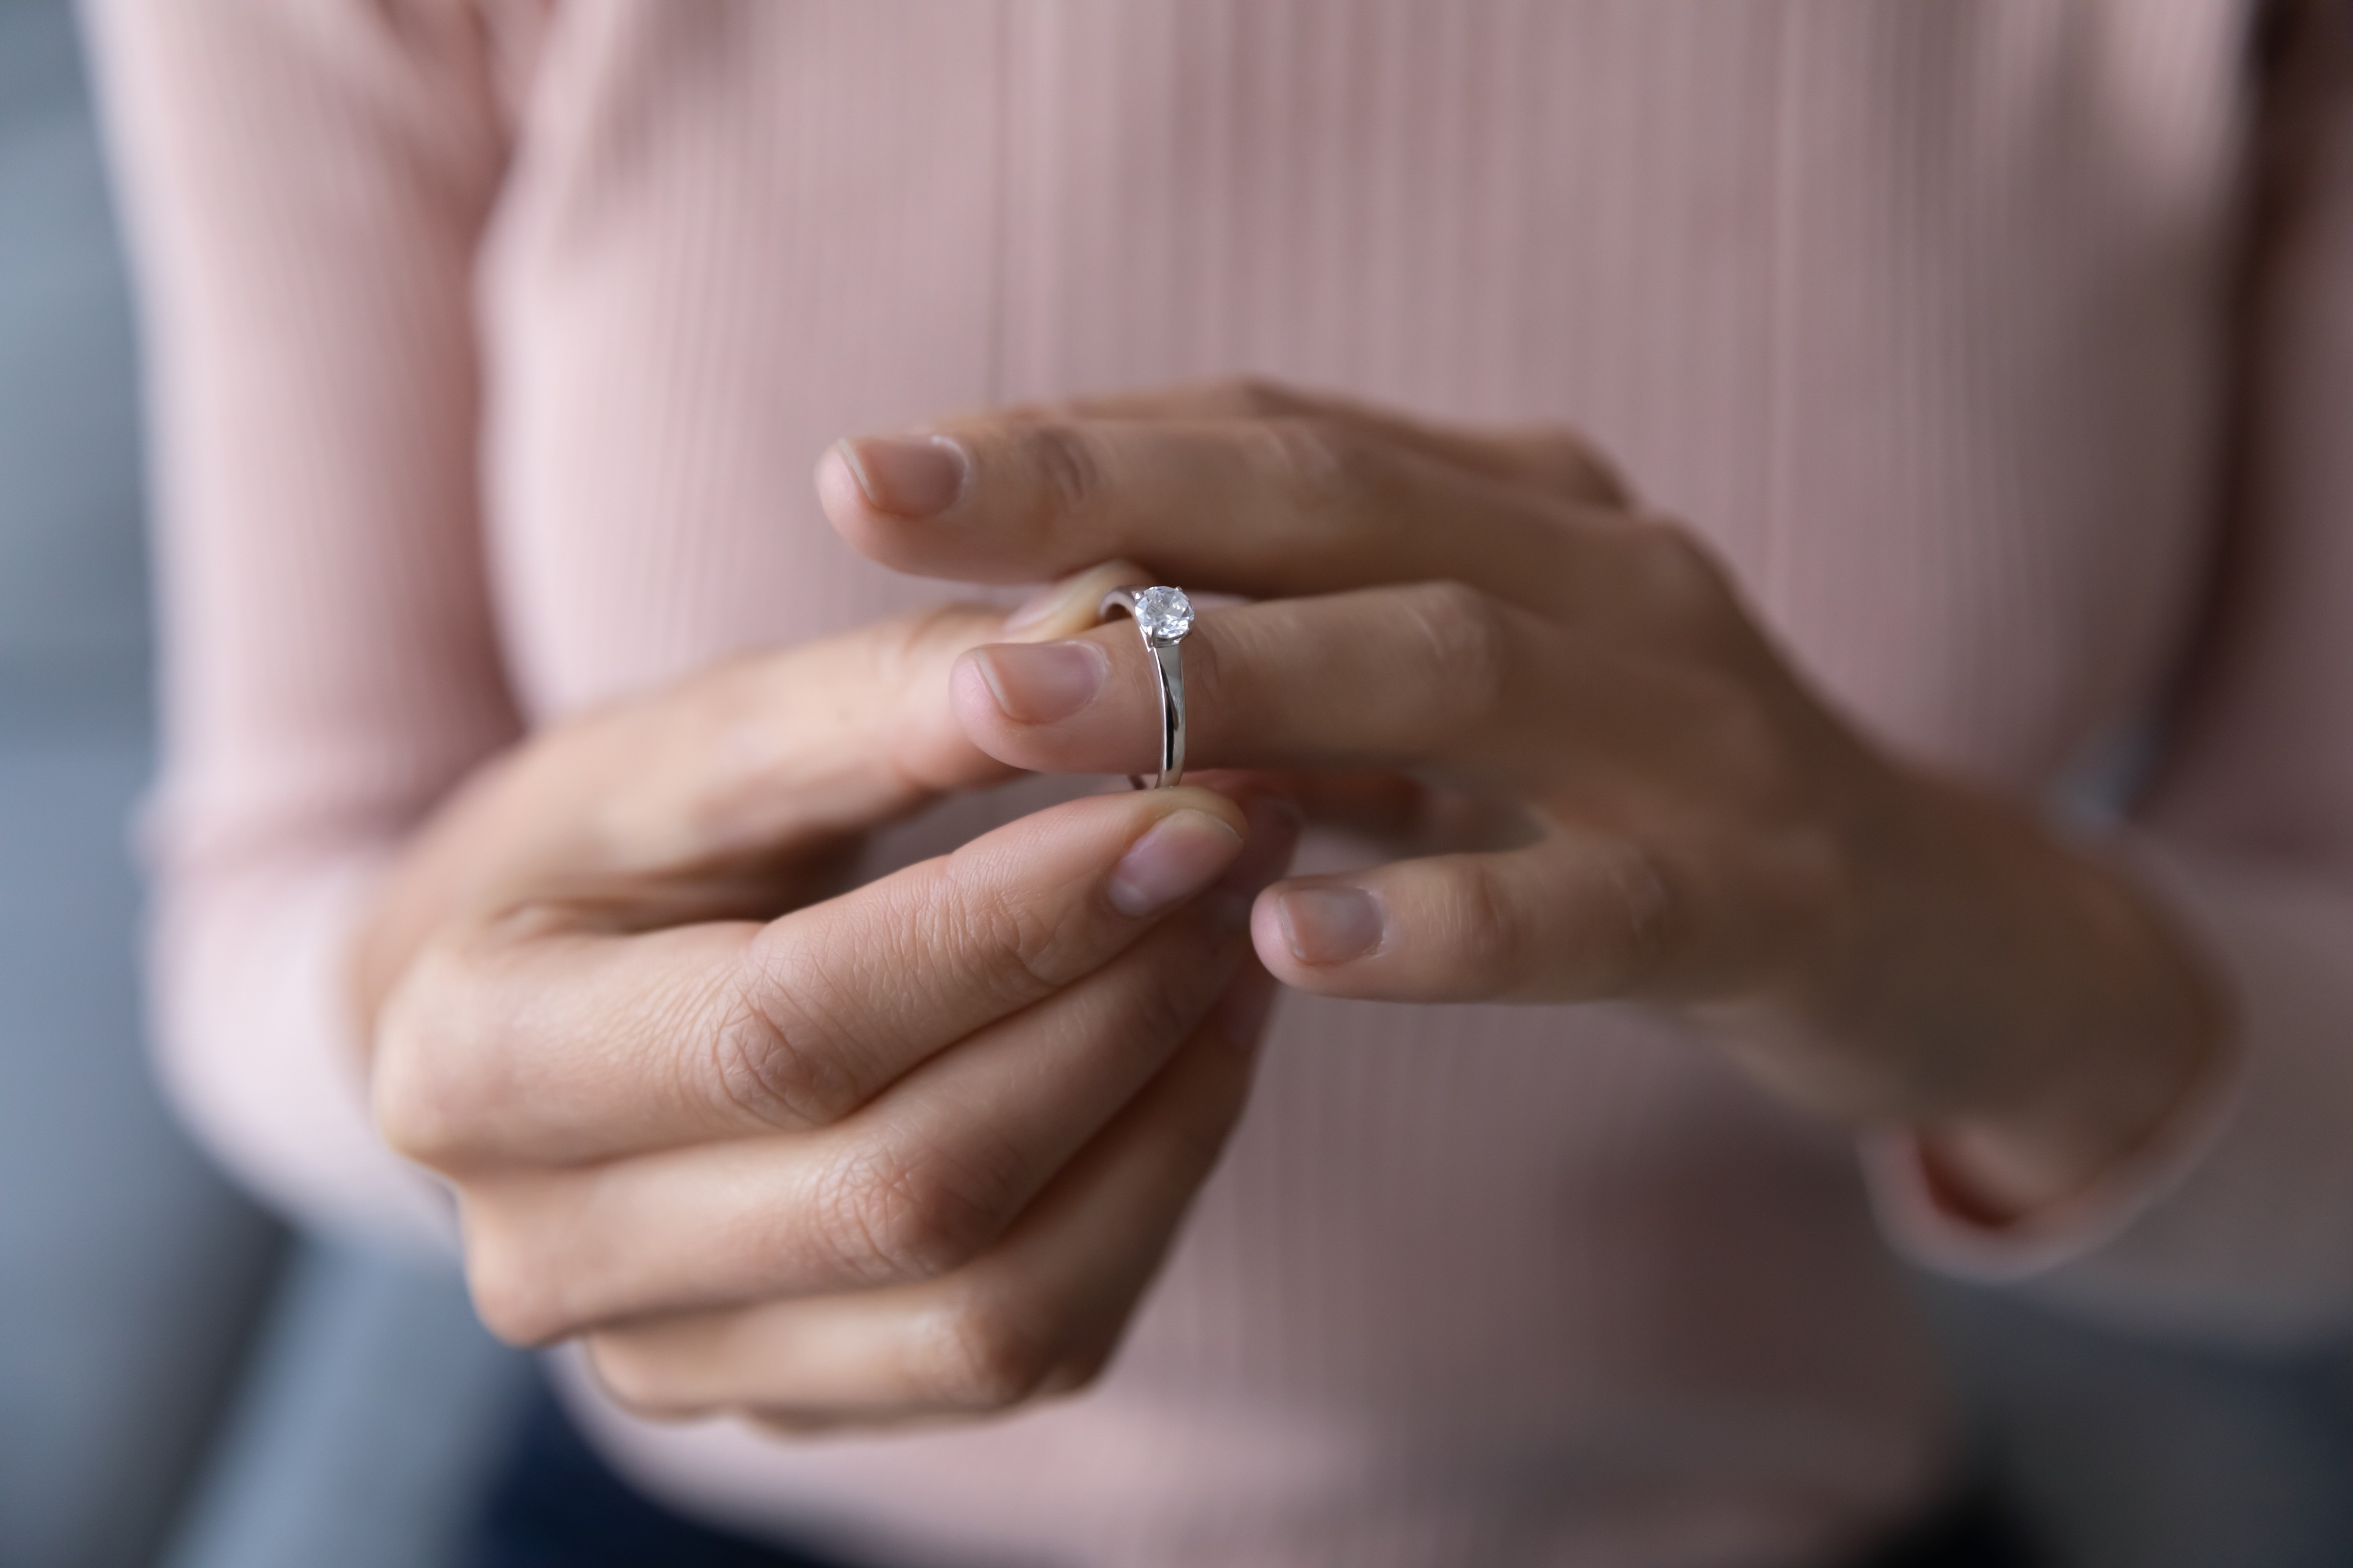 Frau nimmt einen Diamantring ab. | Quelle: Shutterstock